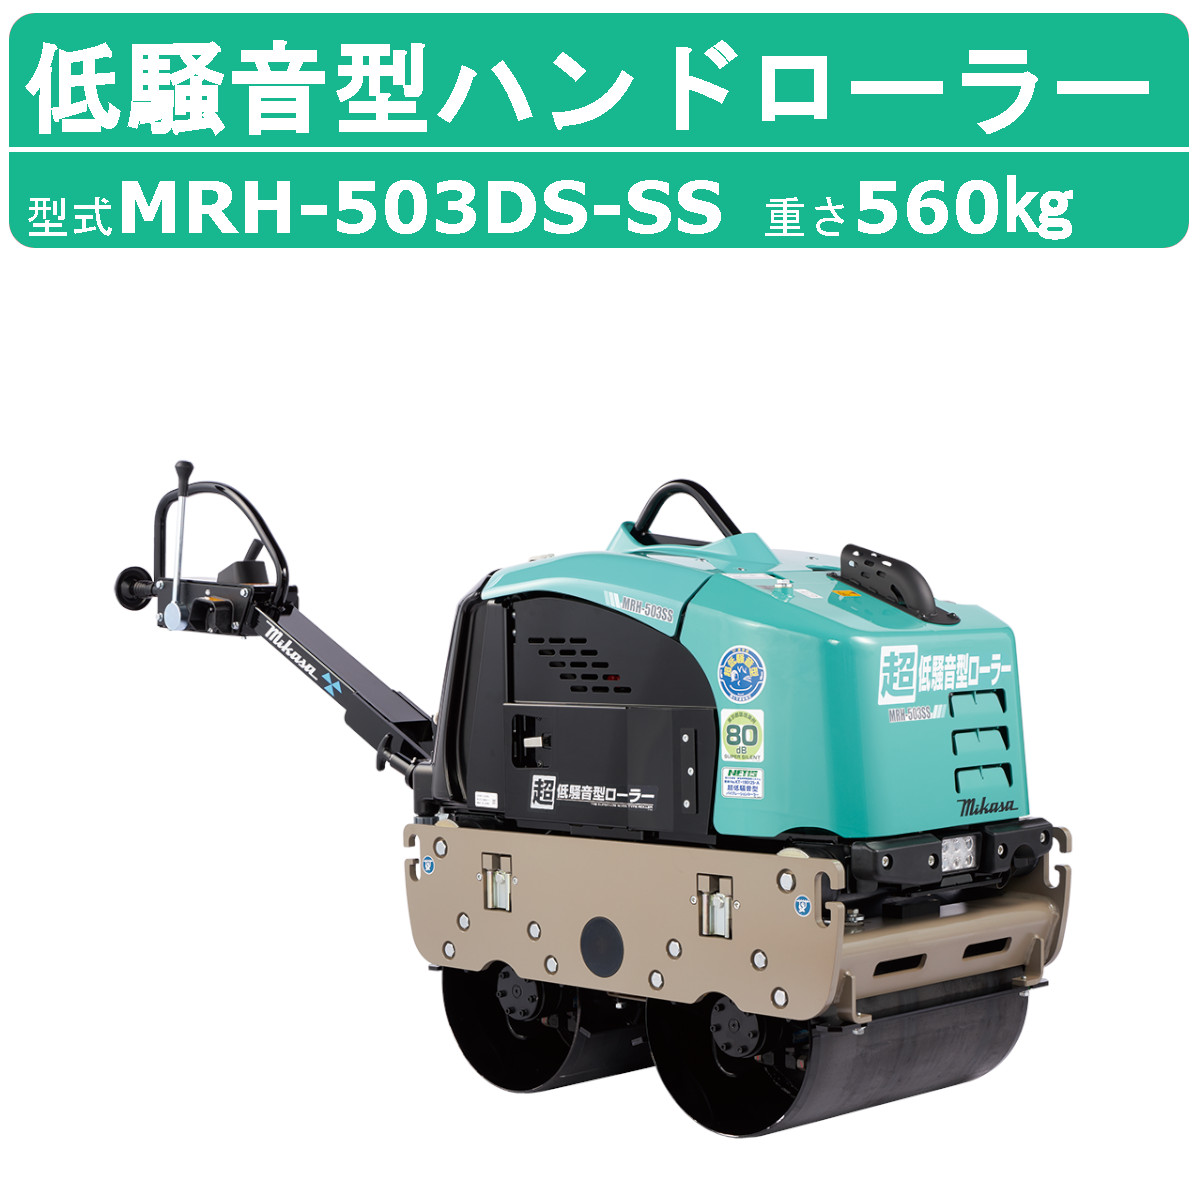 三笠産業 超低騒音型バイブレーションローラー 超低騒音型ハンドローラー MRH-503DS-SS バイブレーションローラー 超低騒音型 mikasa  三笠